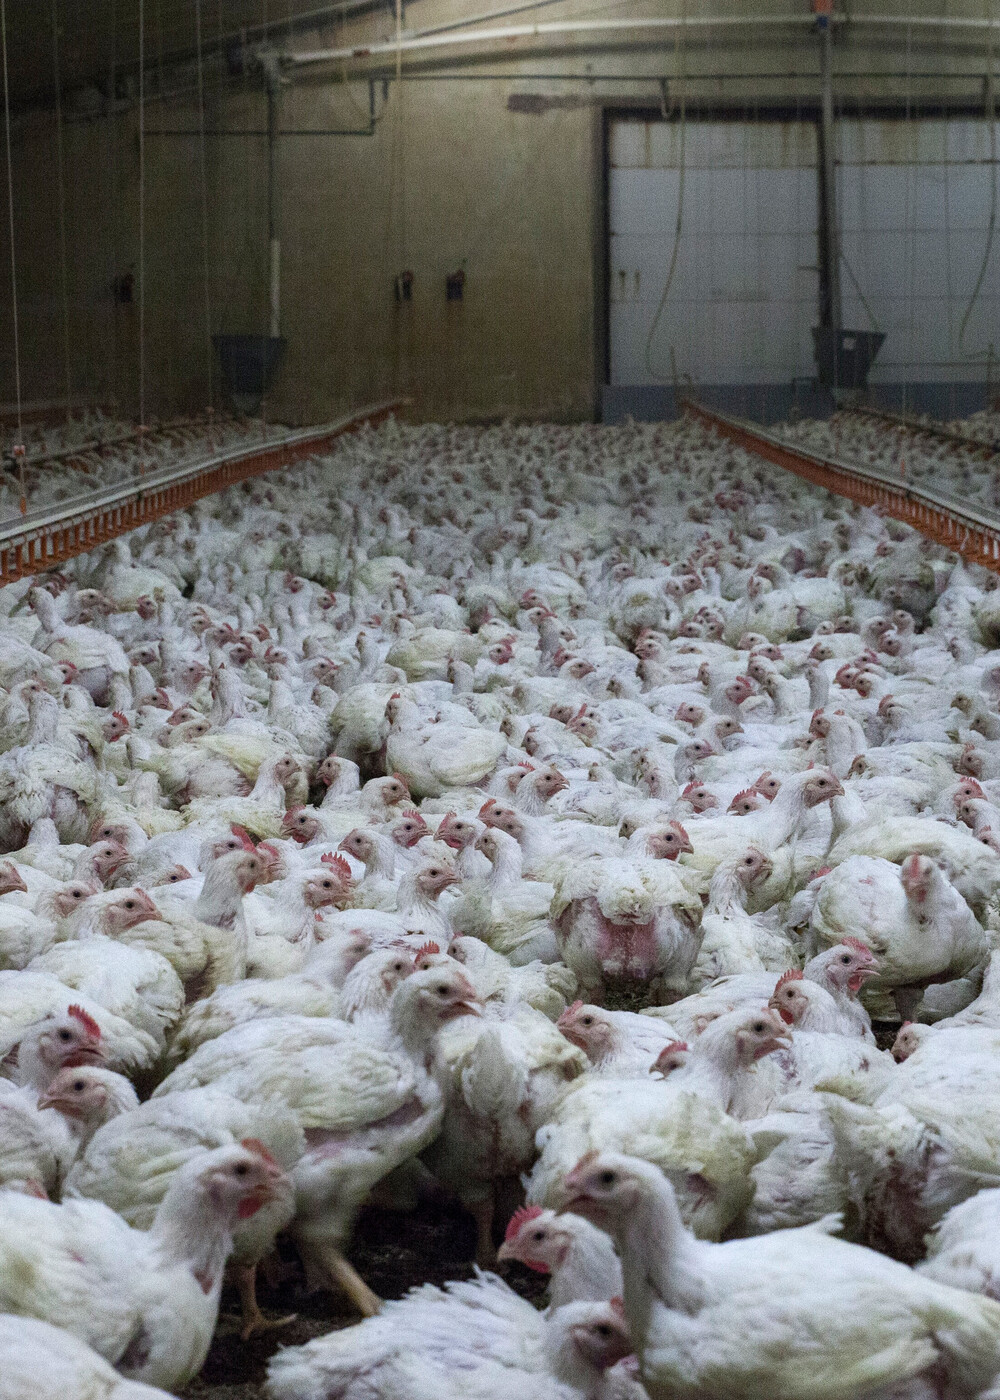 Hühner in der industriellen Tierhaltung